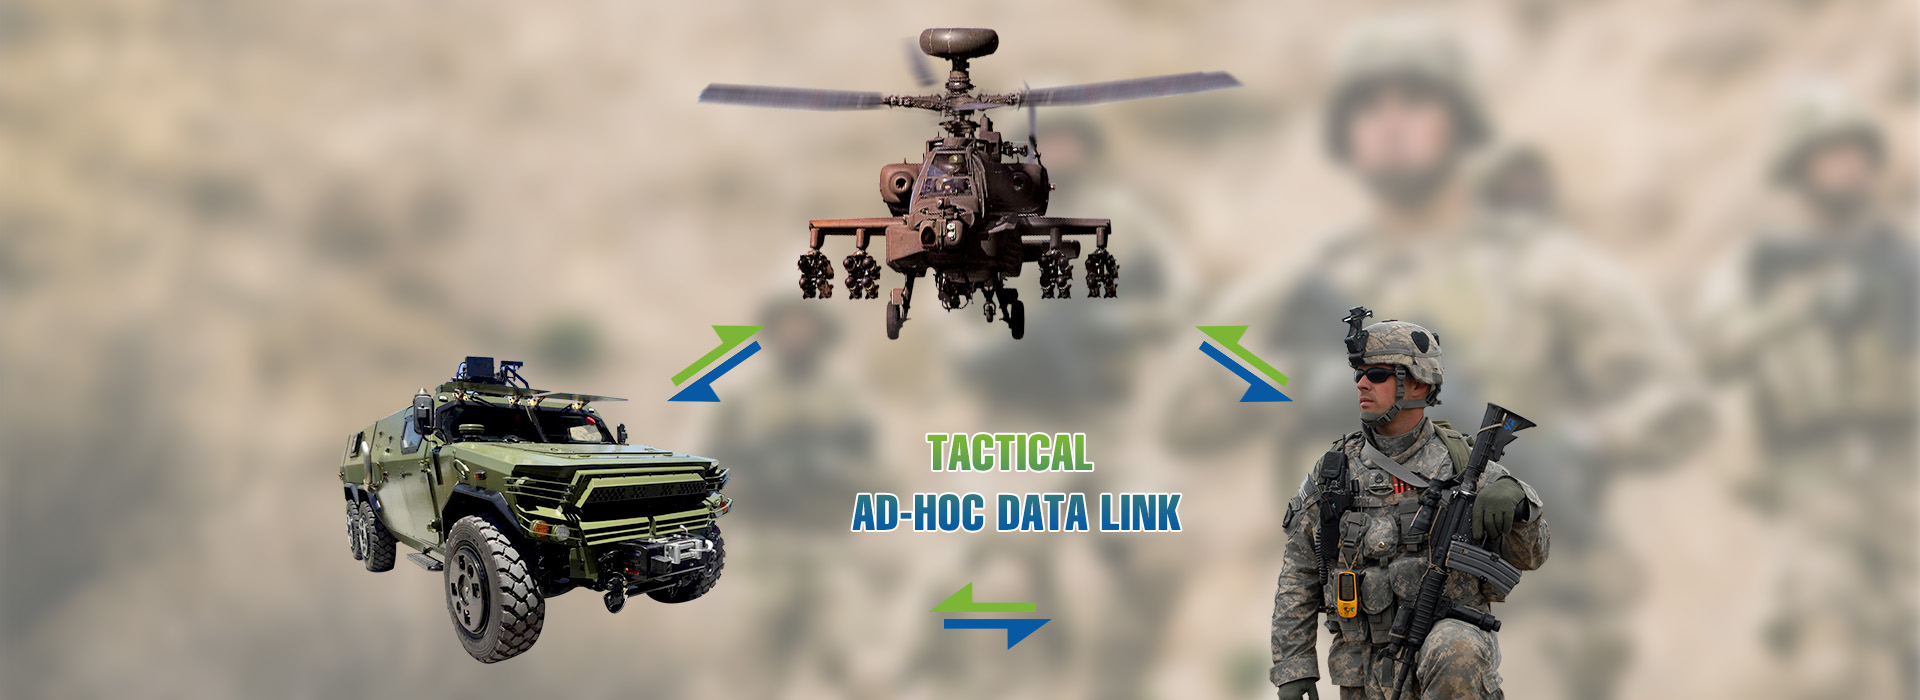 Tactical ad-hoc data link